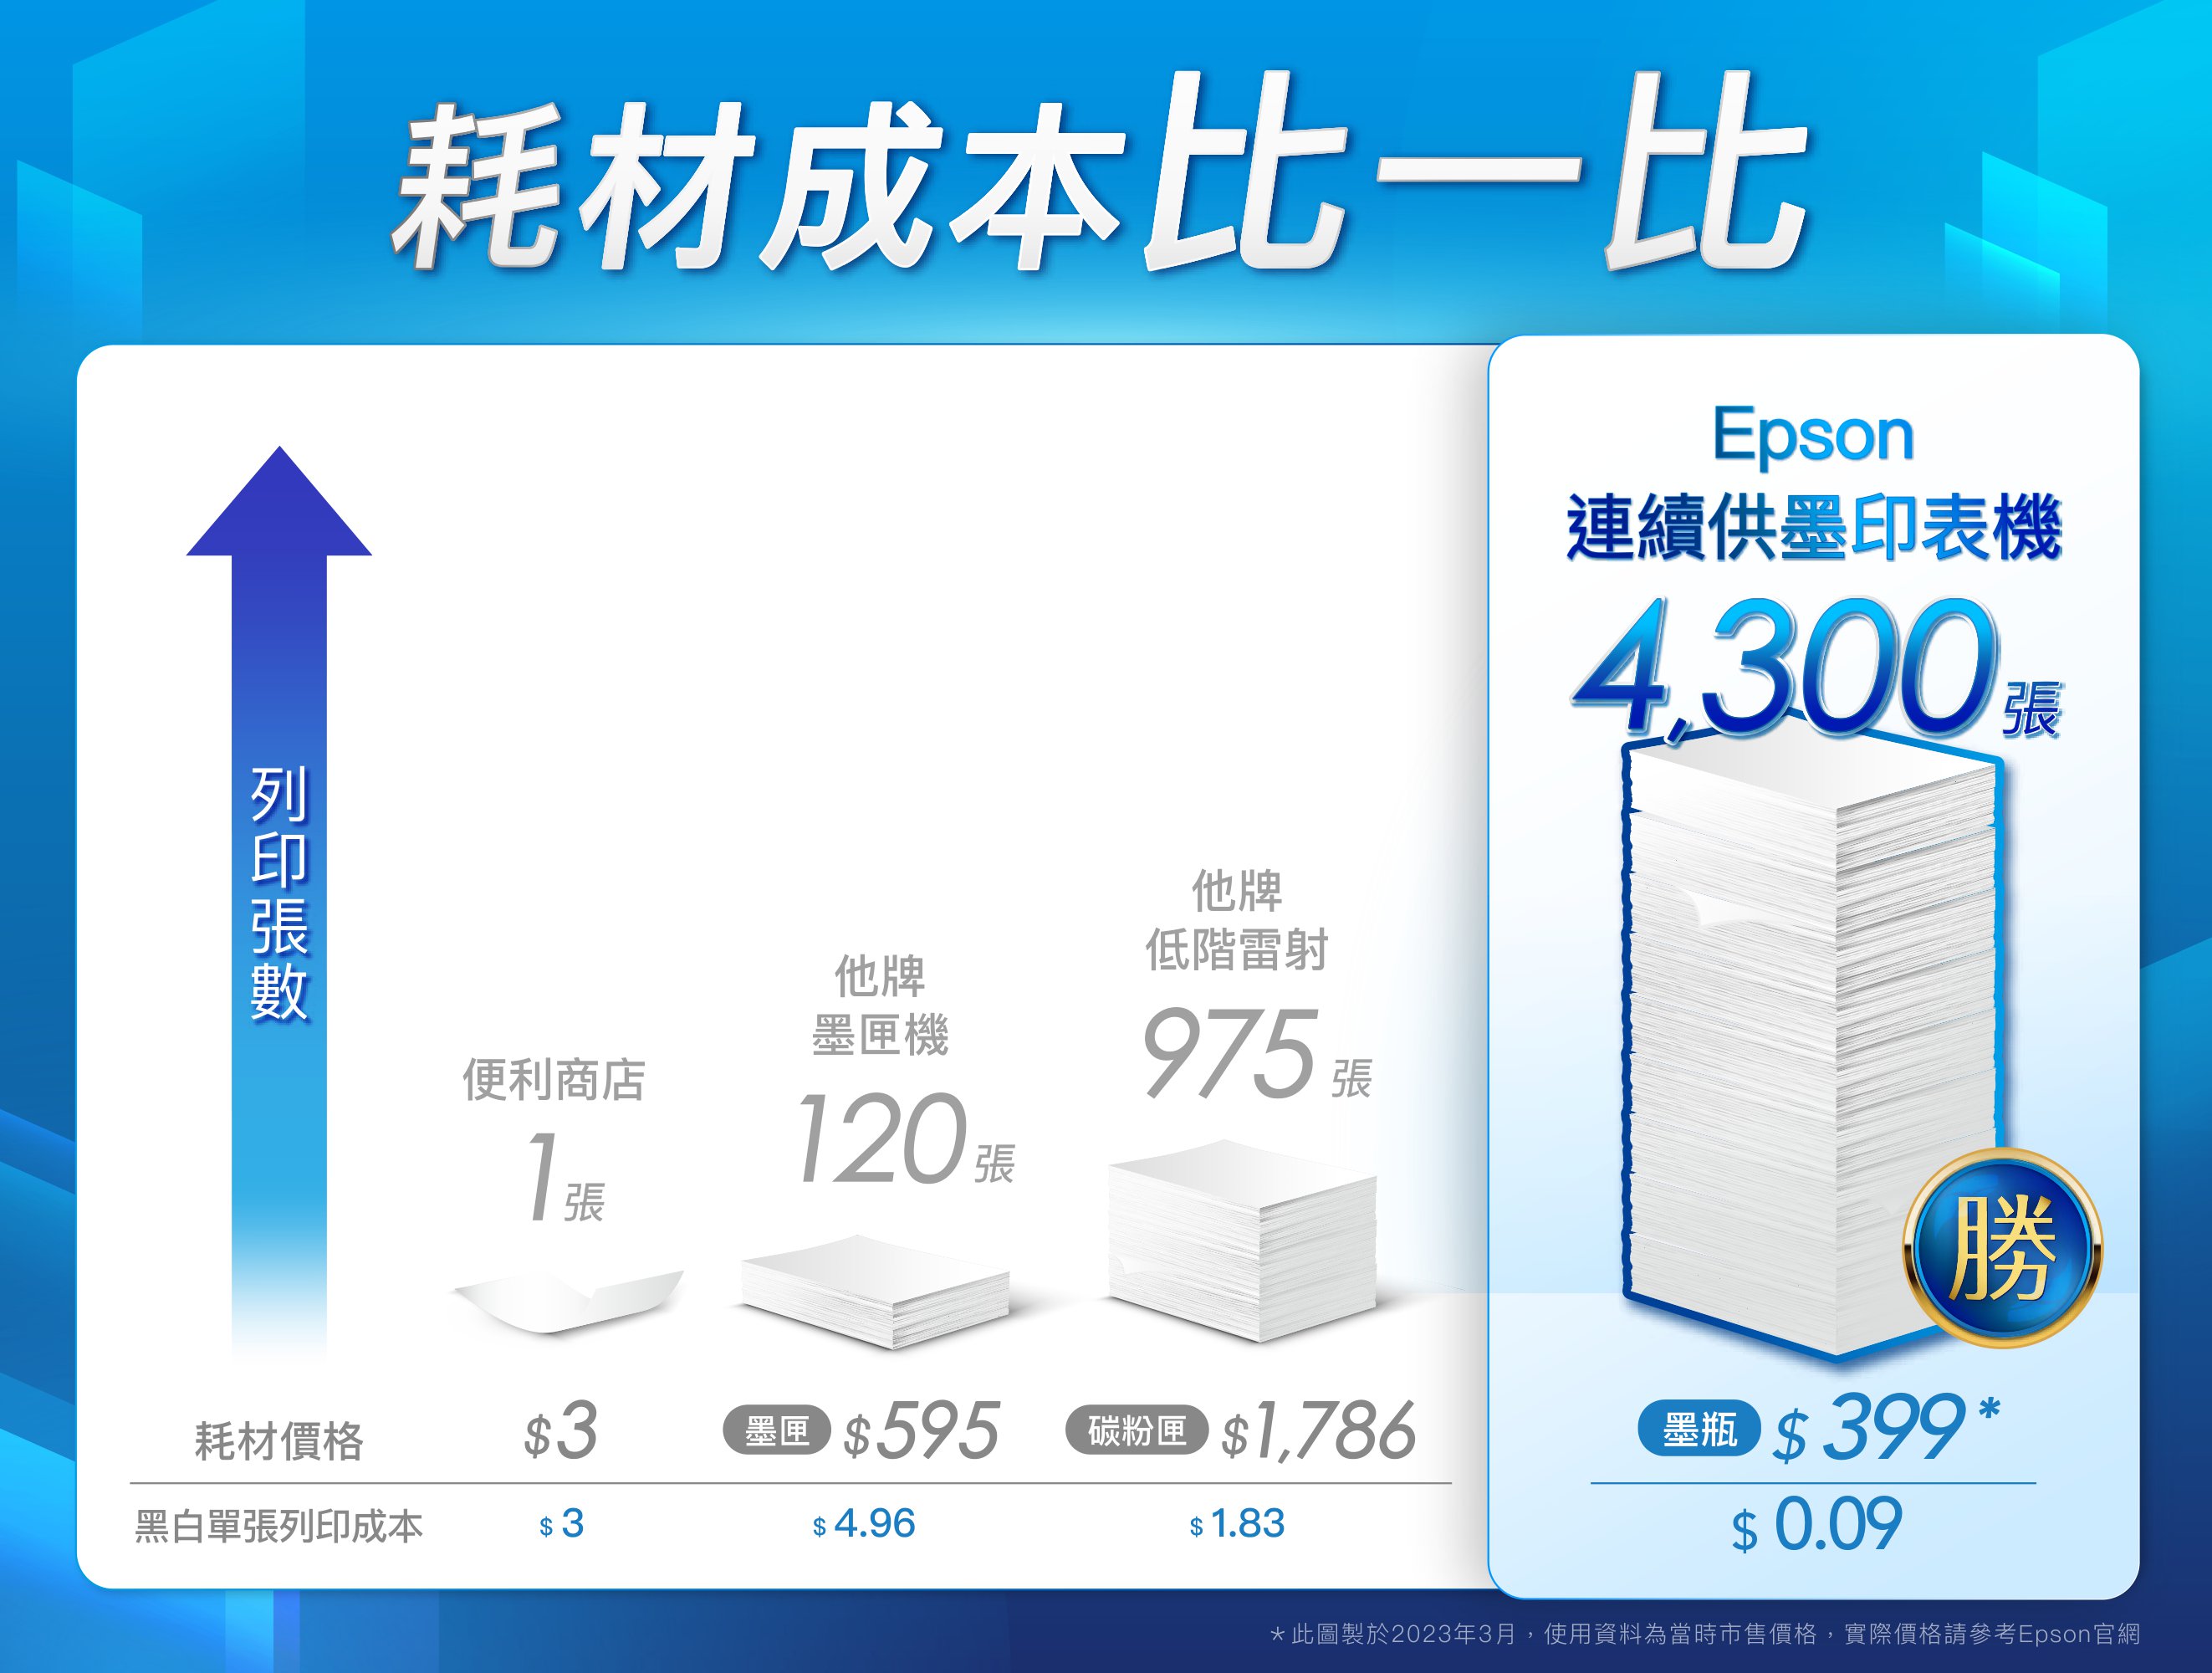 耗材成本比一比Epson連續供墨印表機張他牌低階雷射他牌墨匣機便利商店975 張1張勝耗材價格$3 $595 $1,786 $399 *黑白單張列印成本$ 3$ 4.96$ 1.83$ 0.09*此圖製於2023年3月,使用資料為當時市售價格,實際價格請參考Epson官網